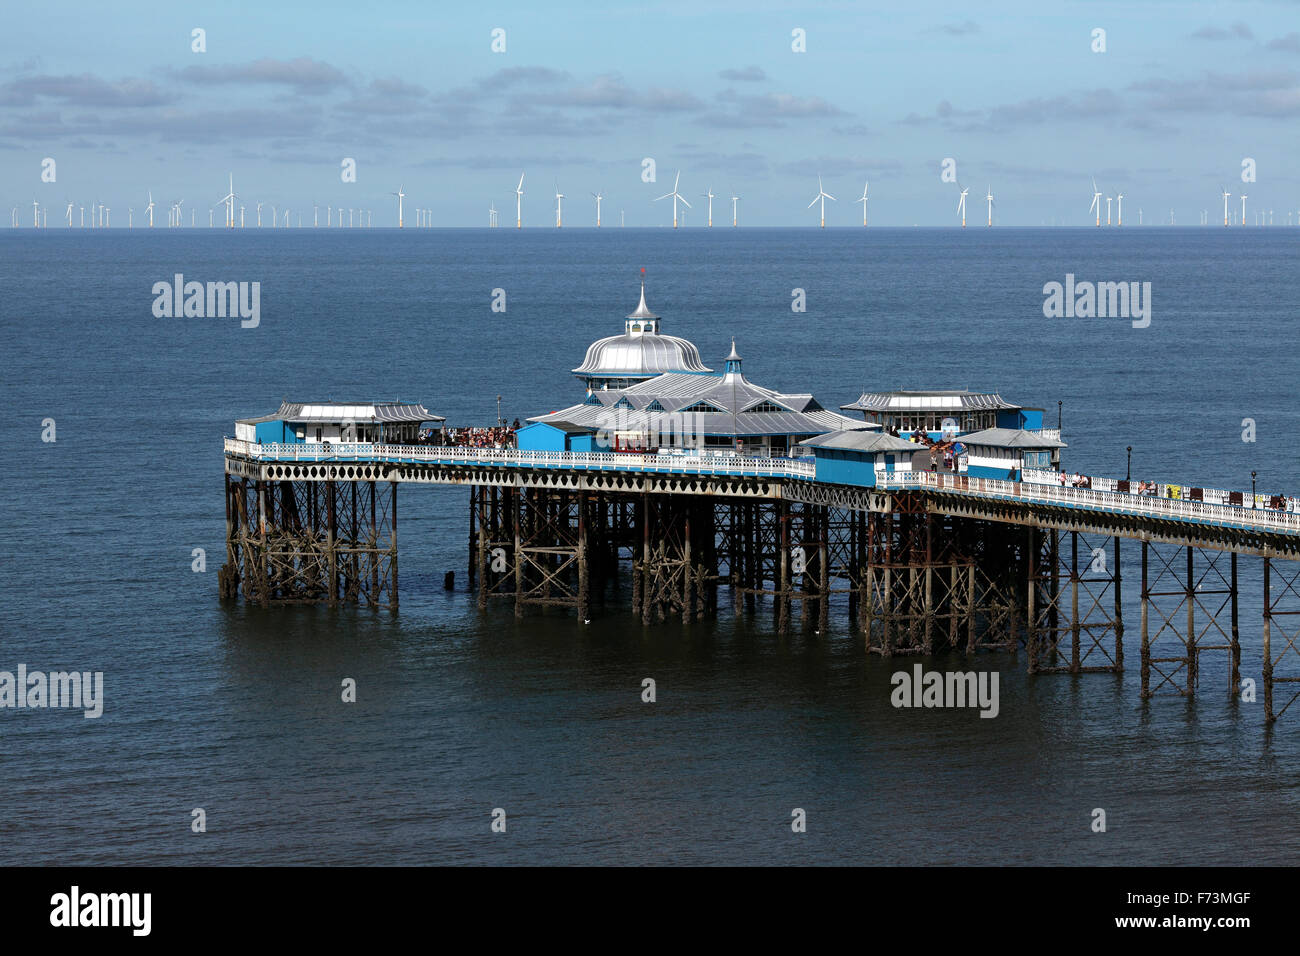 Jetée de Llandudno, Llandudno, au nord du Pays de Galles. Avec l'éolien offshore Rhyl Flats en arrière-plan. Banque D'Images